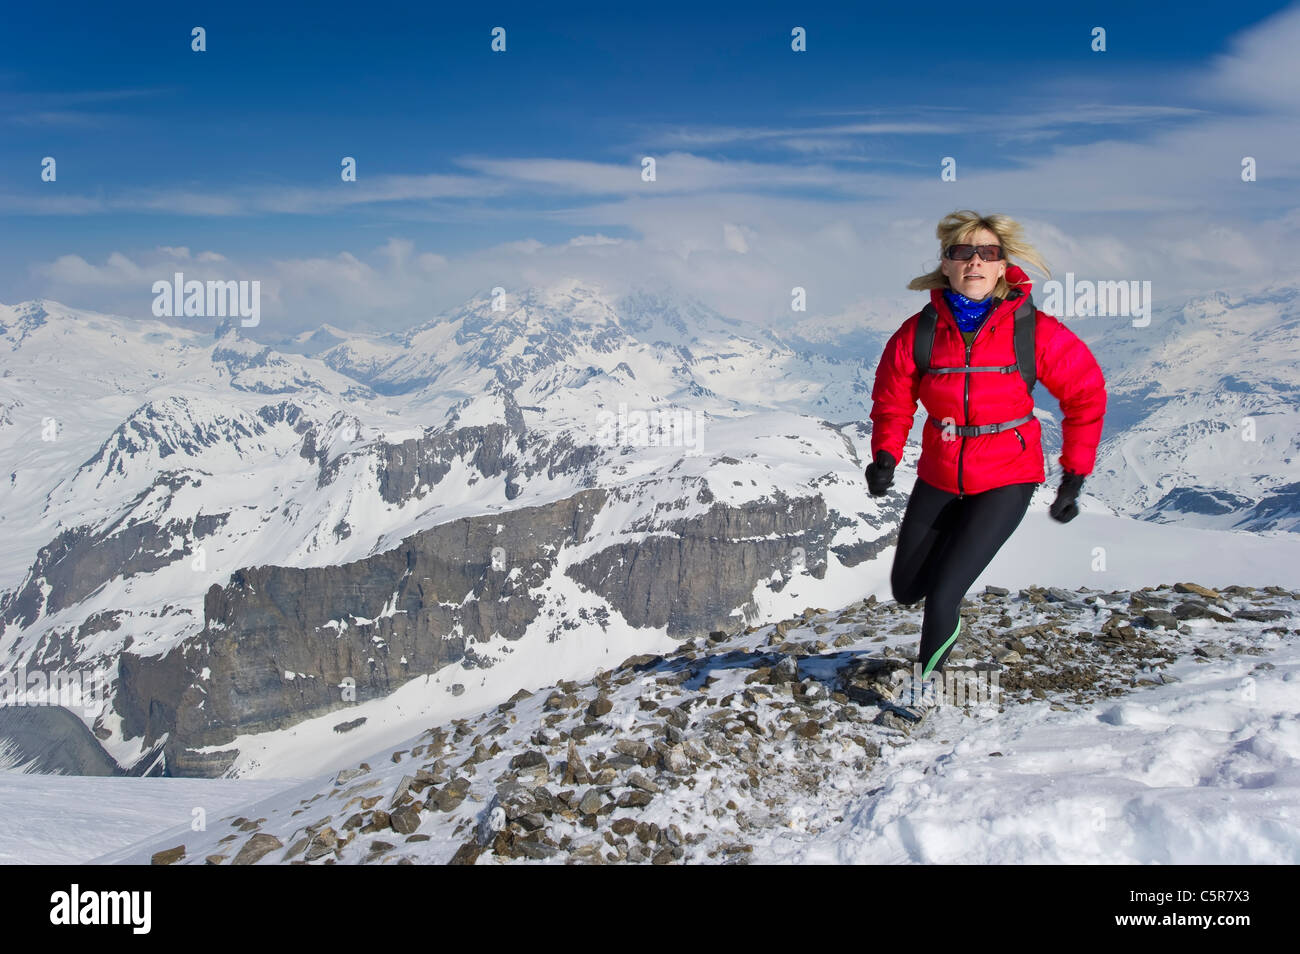 Mujer correr por los altos picos nevados. Foto de stock